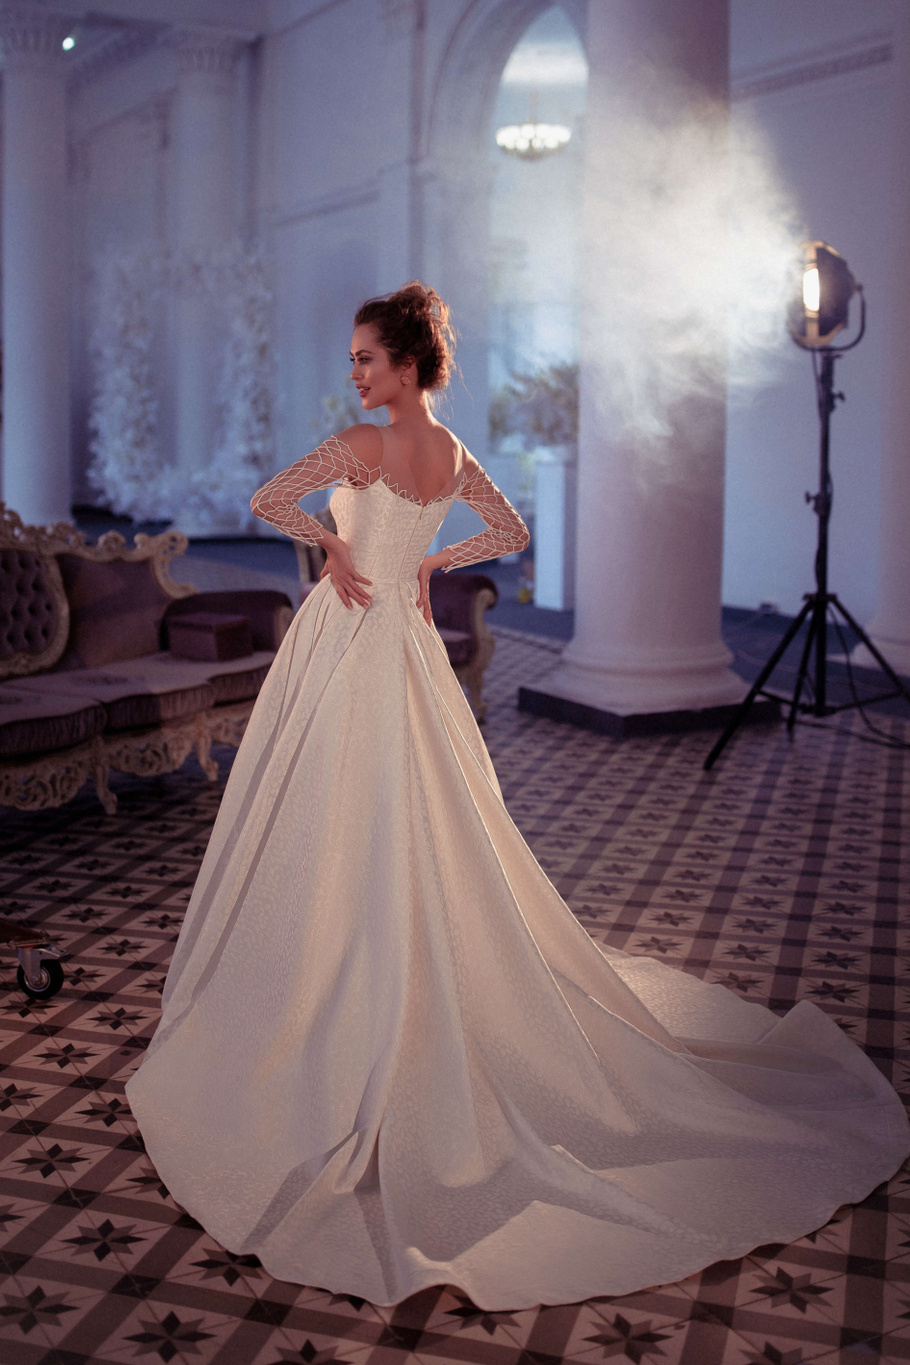 Купить свадебное платье «Илаитис» Бламмо Биамо из коллекции Свит Лайф 2021 года в Воронеже